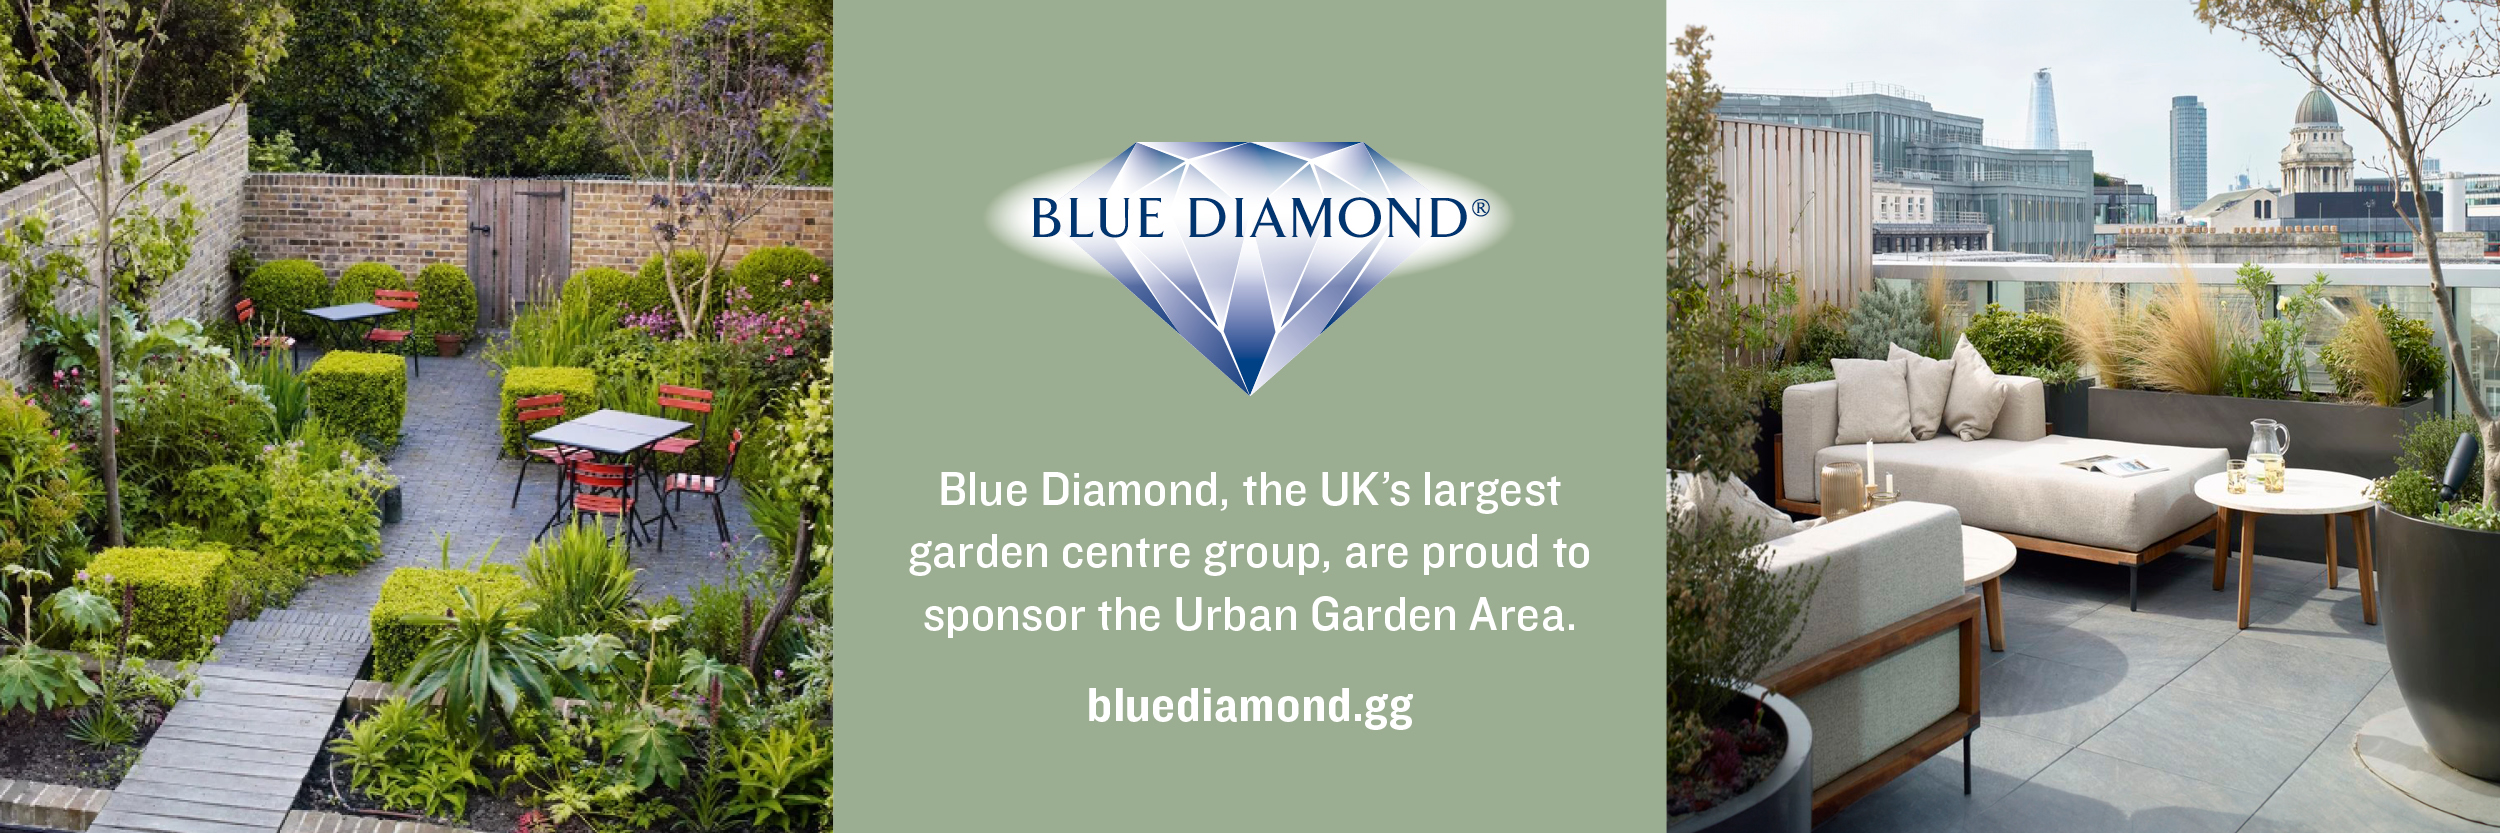 Blue Diamond_Gardener's World_Banner Advert_AW